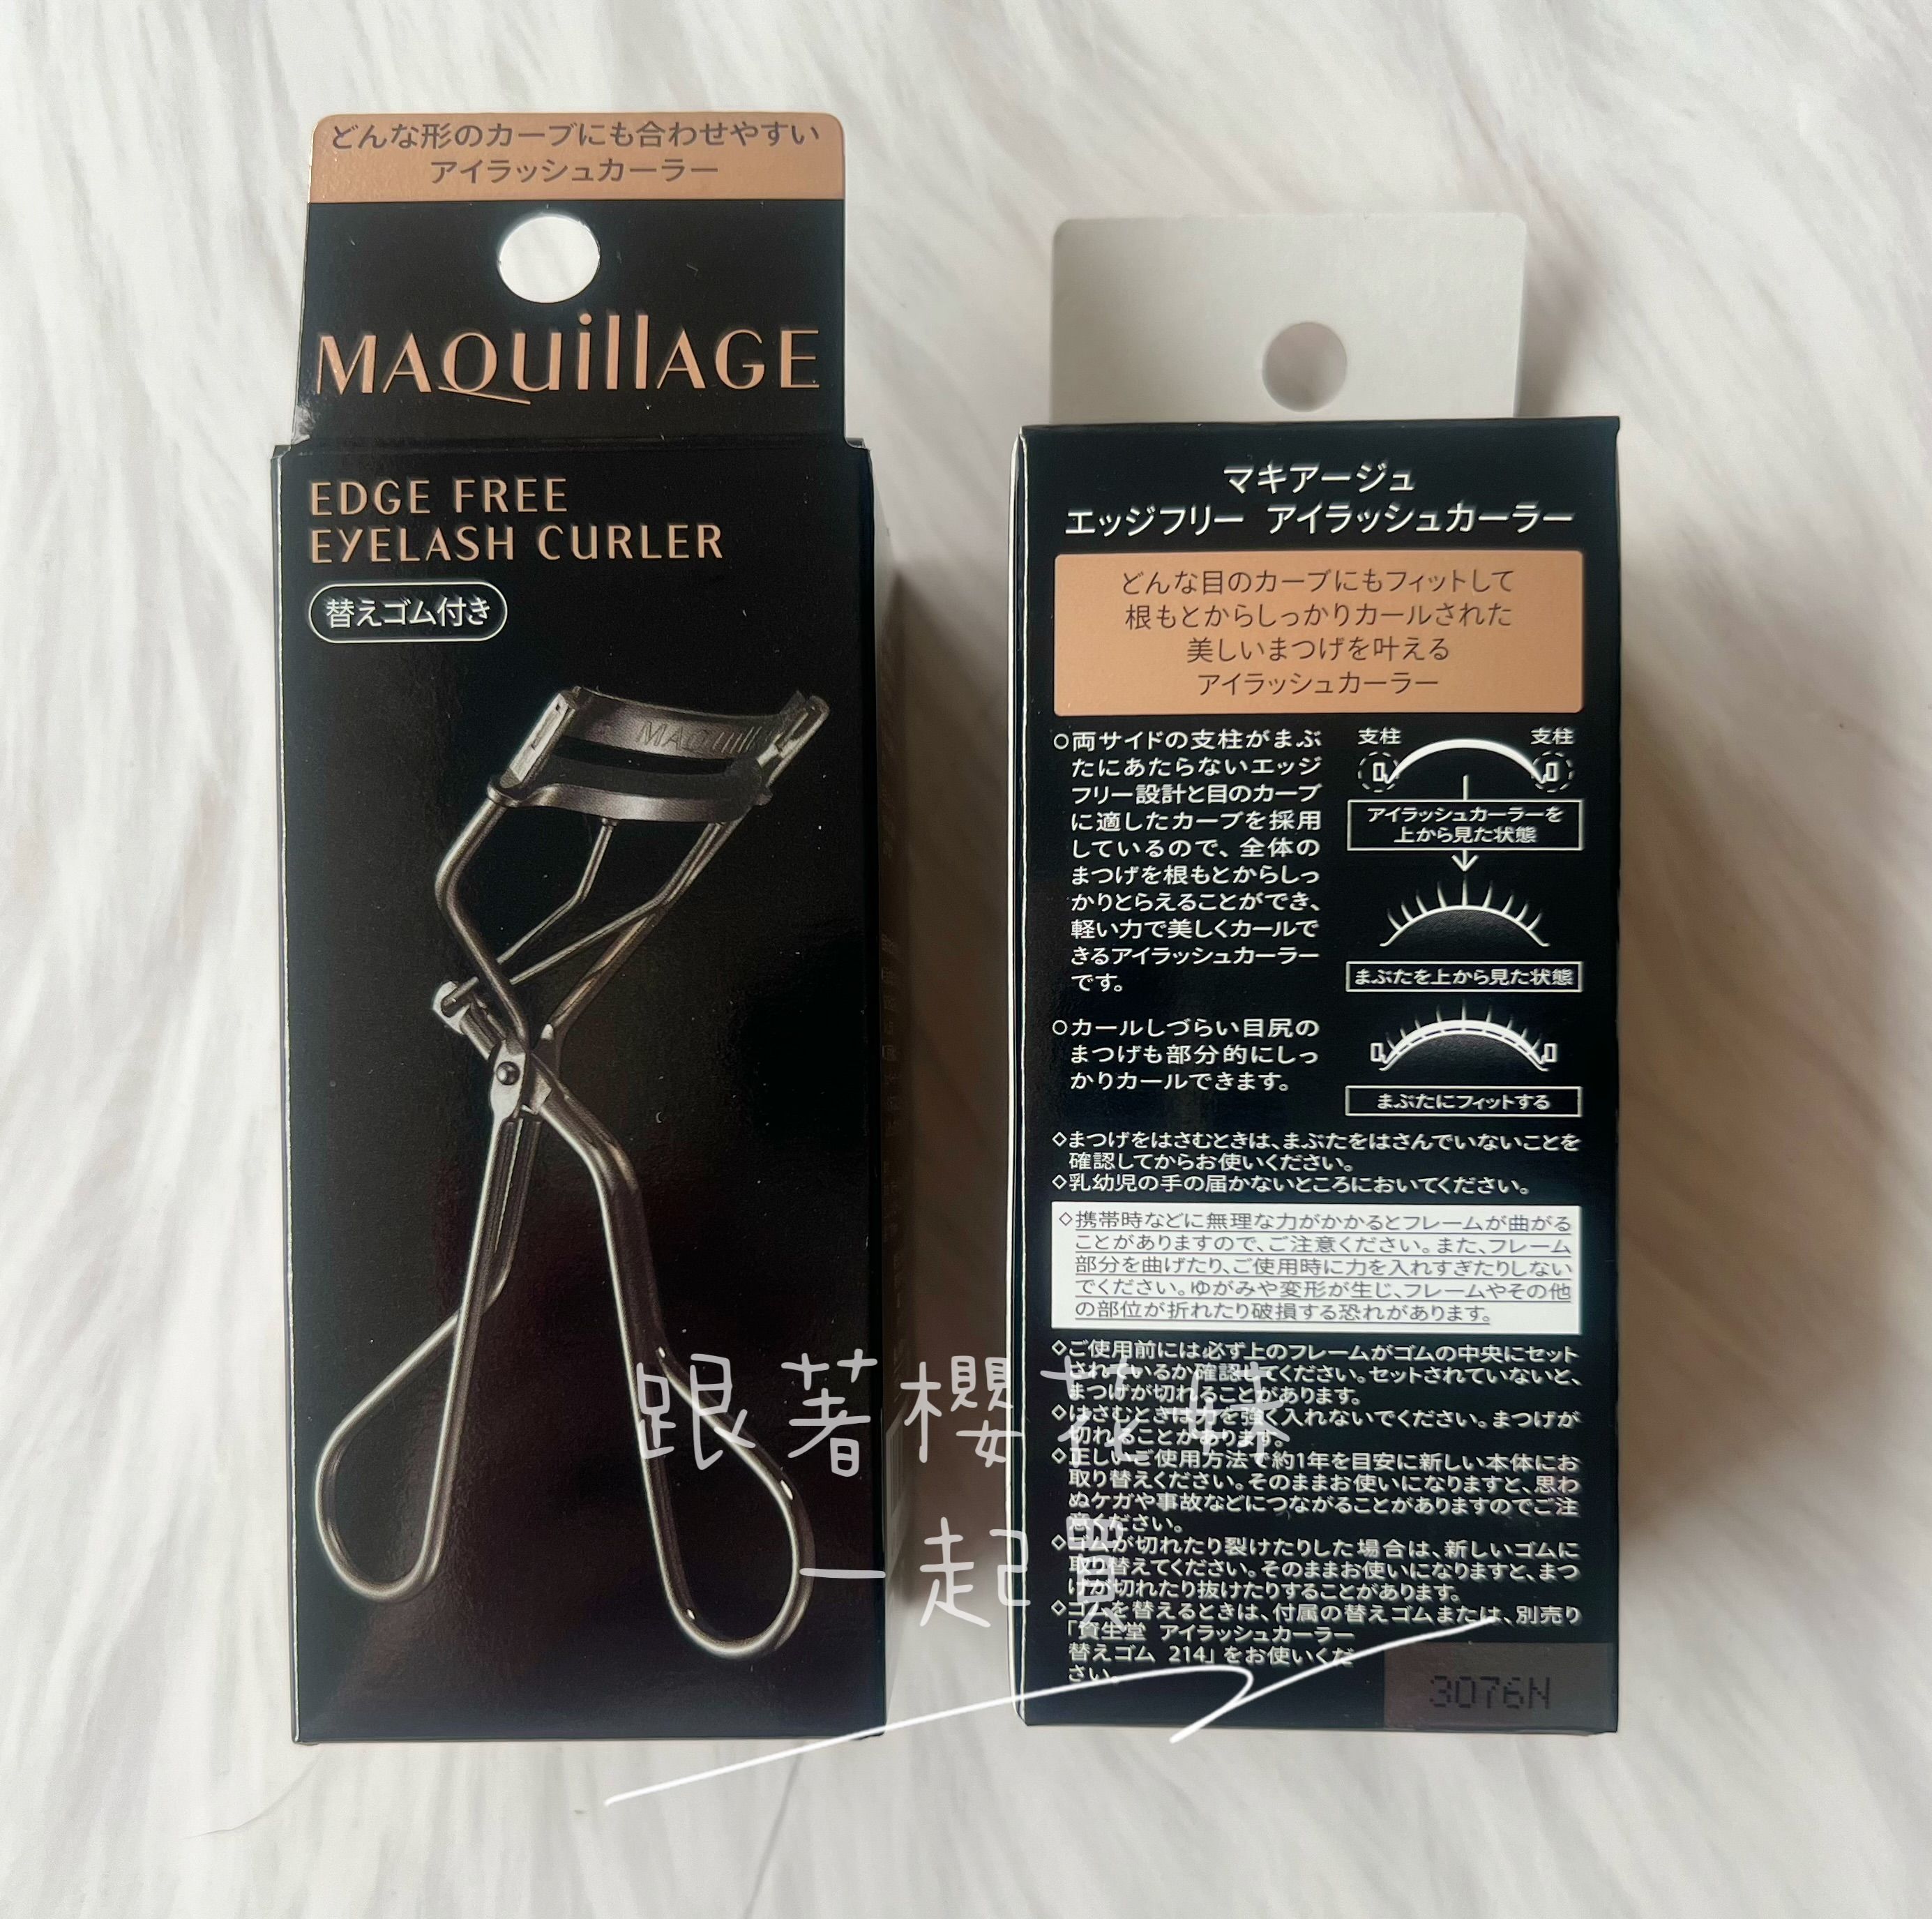 日本資生堂 MAQuillAGE 心機3D立體超廣角睫毛夾 ★新包裝★ 輕鬆擁有捲翹睫毛